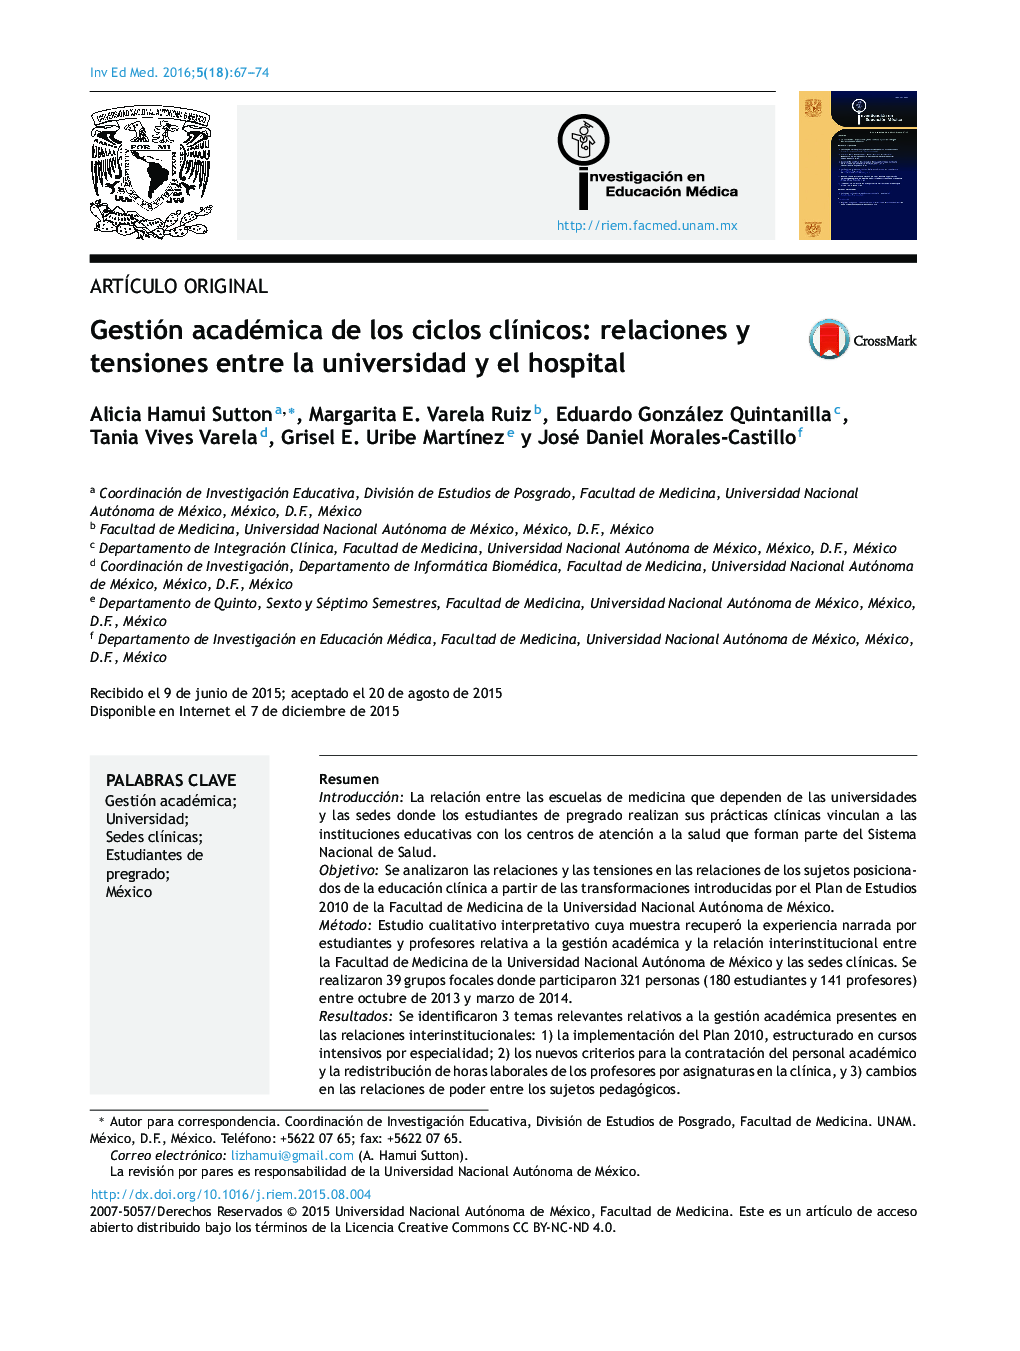 Gestión académica de los ciclos clínicos: relaciones y tensiones entre la universidad y el hospital 